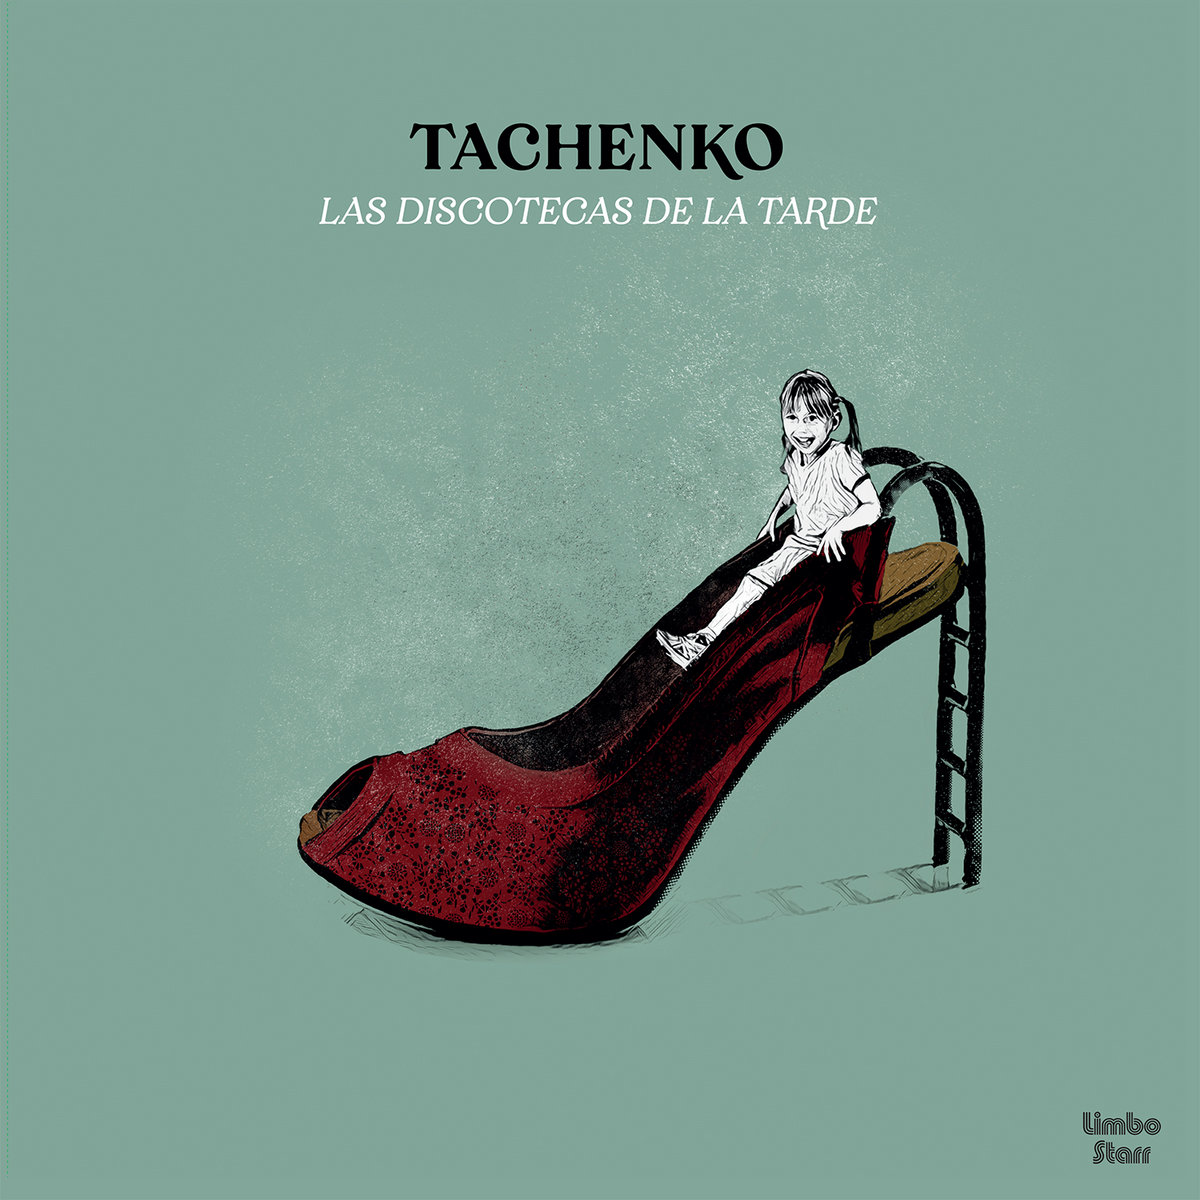 Tachenko "Las Discotecas de la Tarde" LP